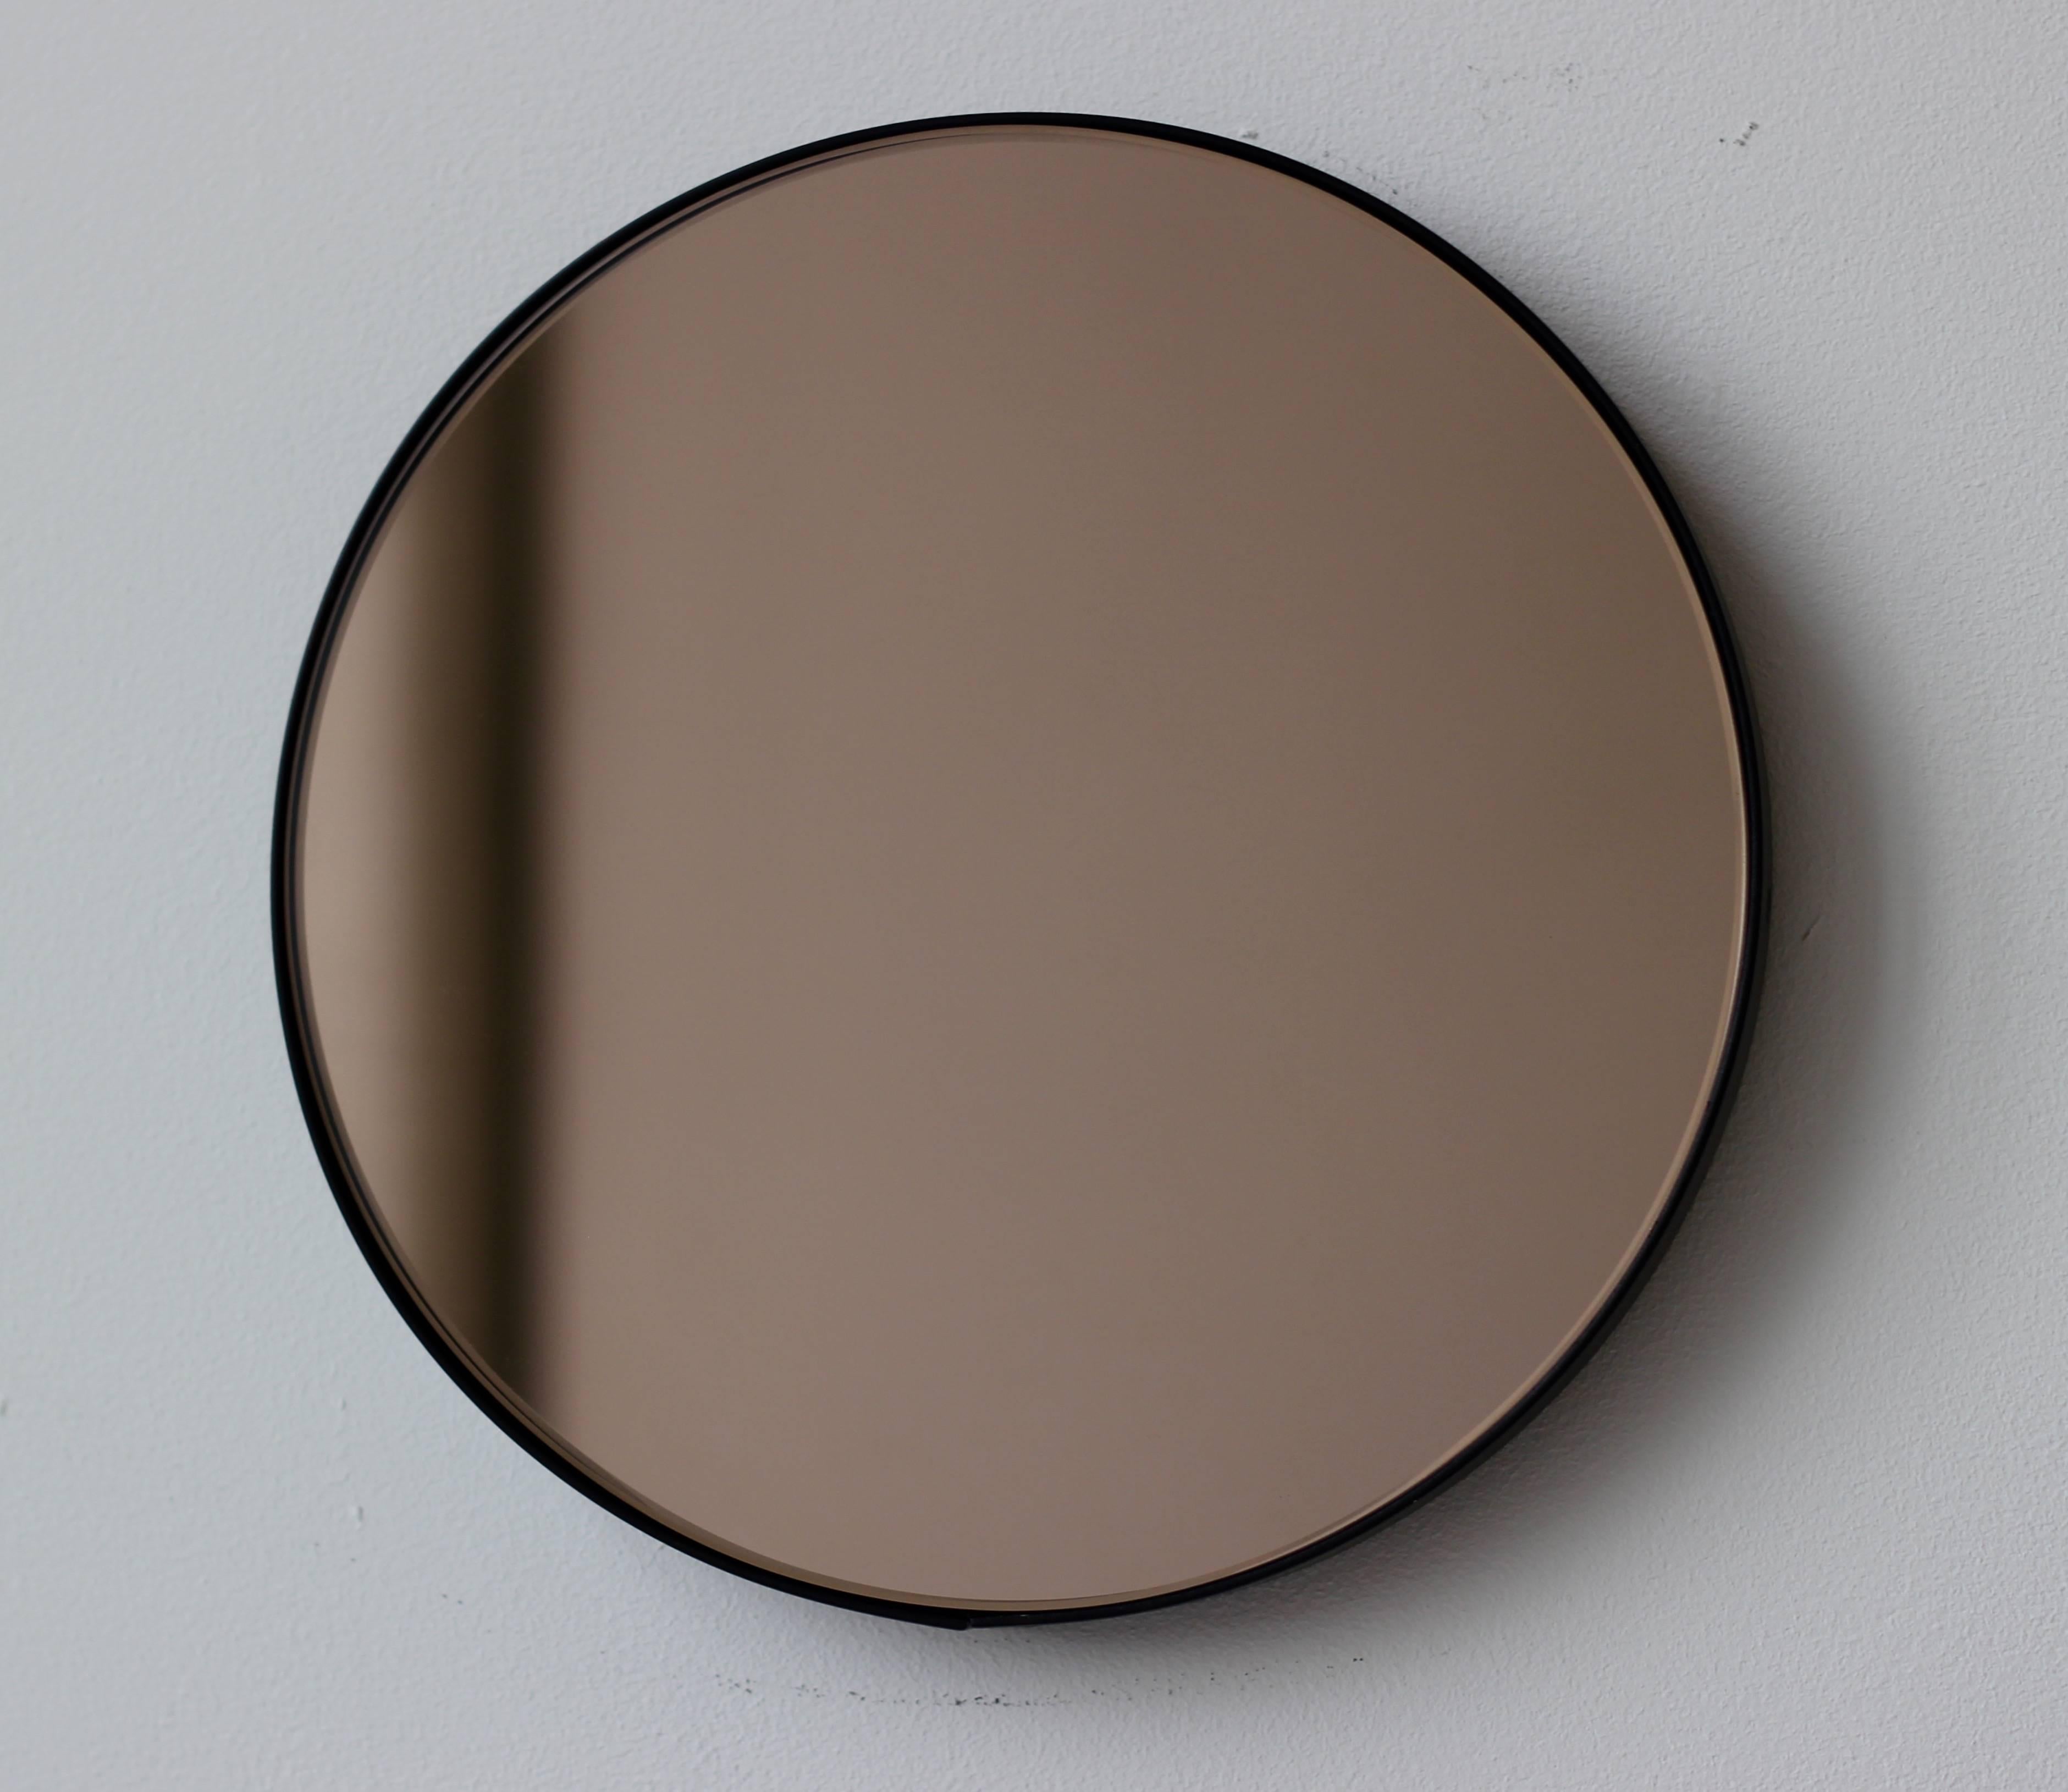 Miroir rond teinté bronze Orbis™ contemporain avec un cadre minimaliste en aluminium peint par poudrage en noir. Conçu et fabriqué à la main à Londres, au Royaume-Uni.

Les miroirs de taille moyenne, grande et extra-large (60, 80 et 100 cm) sont